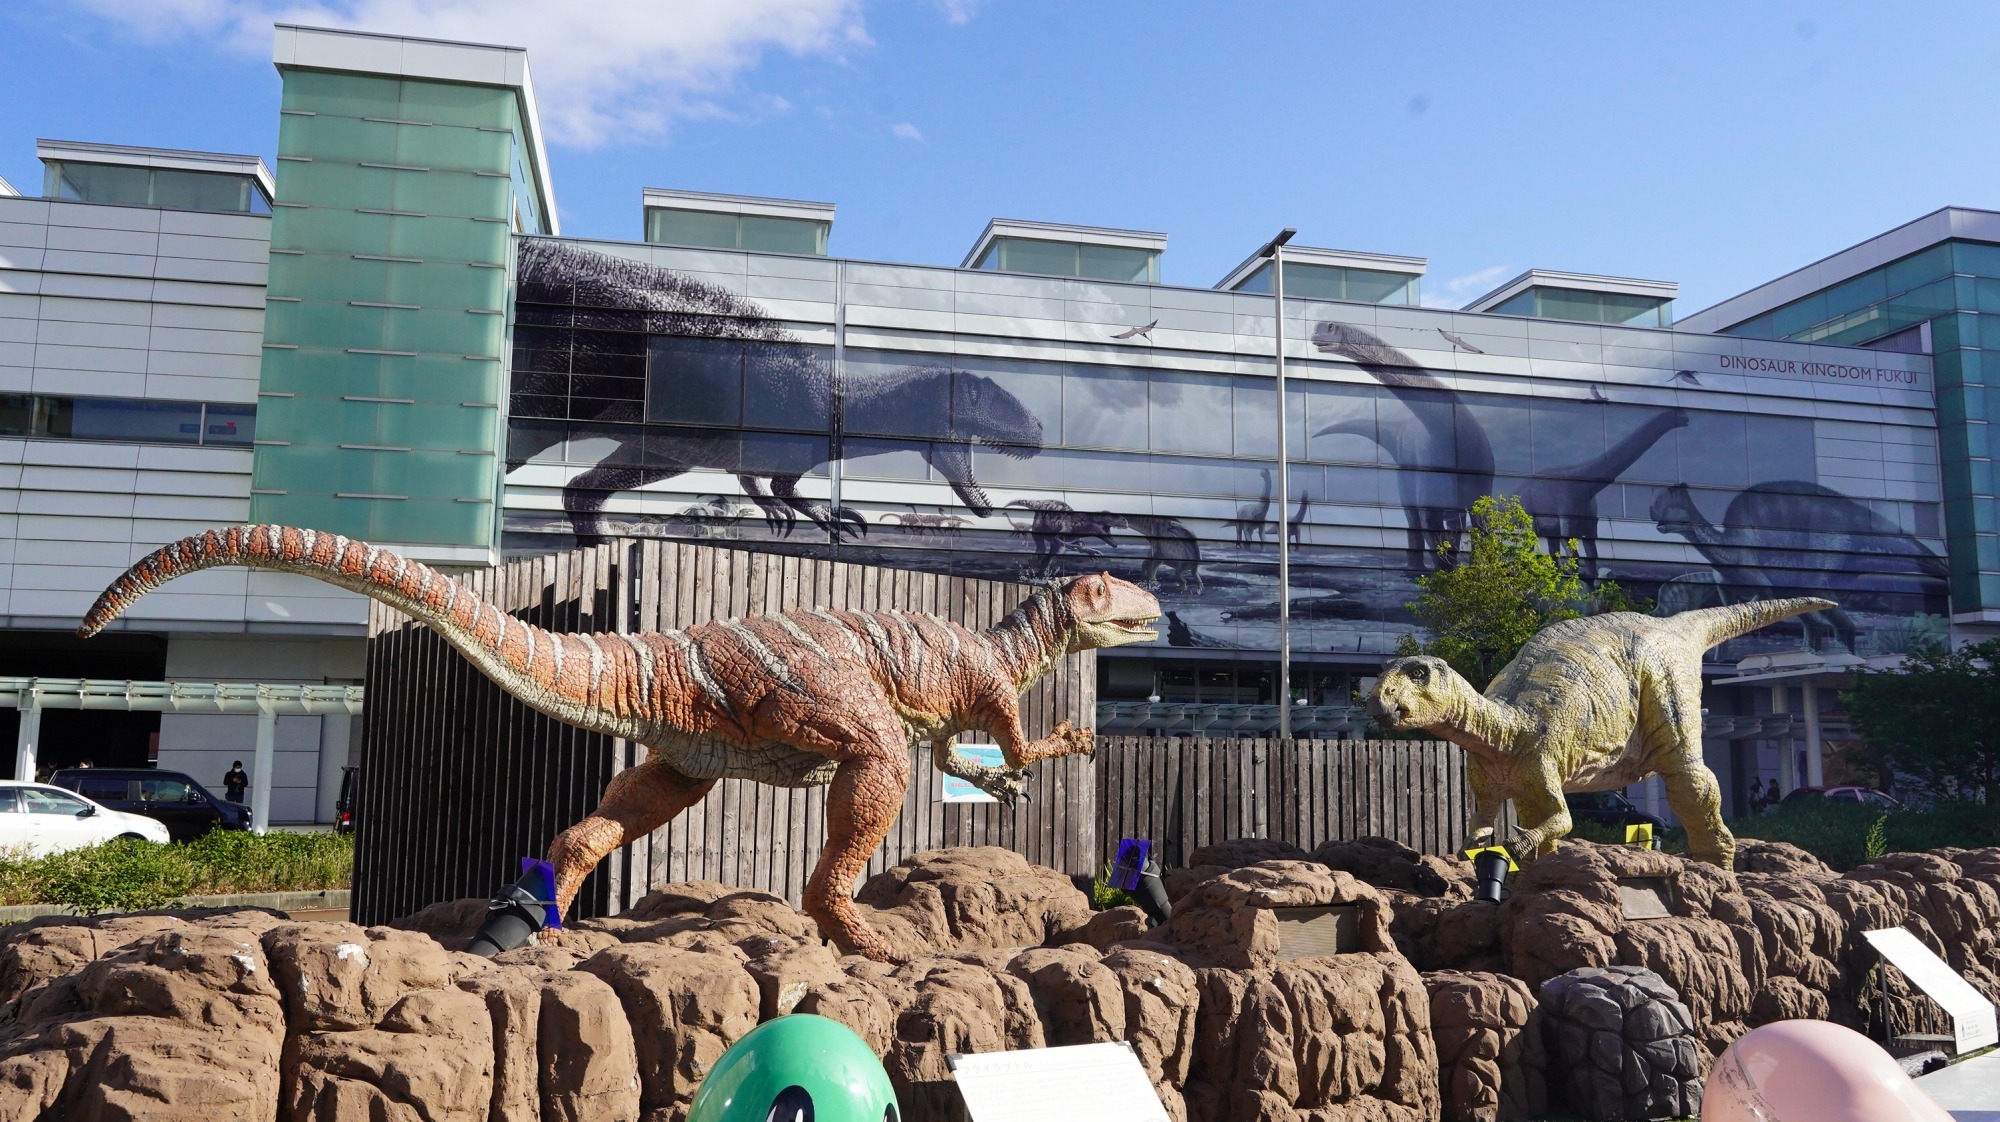 福井駅西口恐竜広場、JR福井駅の駅舎にも恐竜たちの姿が描かれています